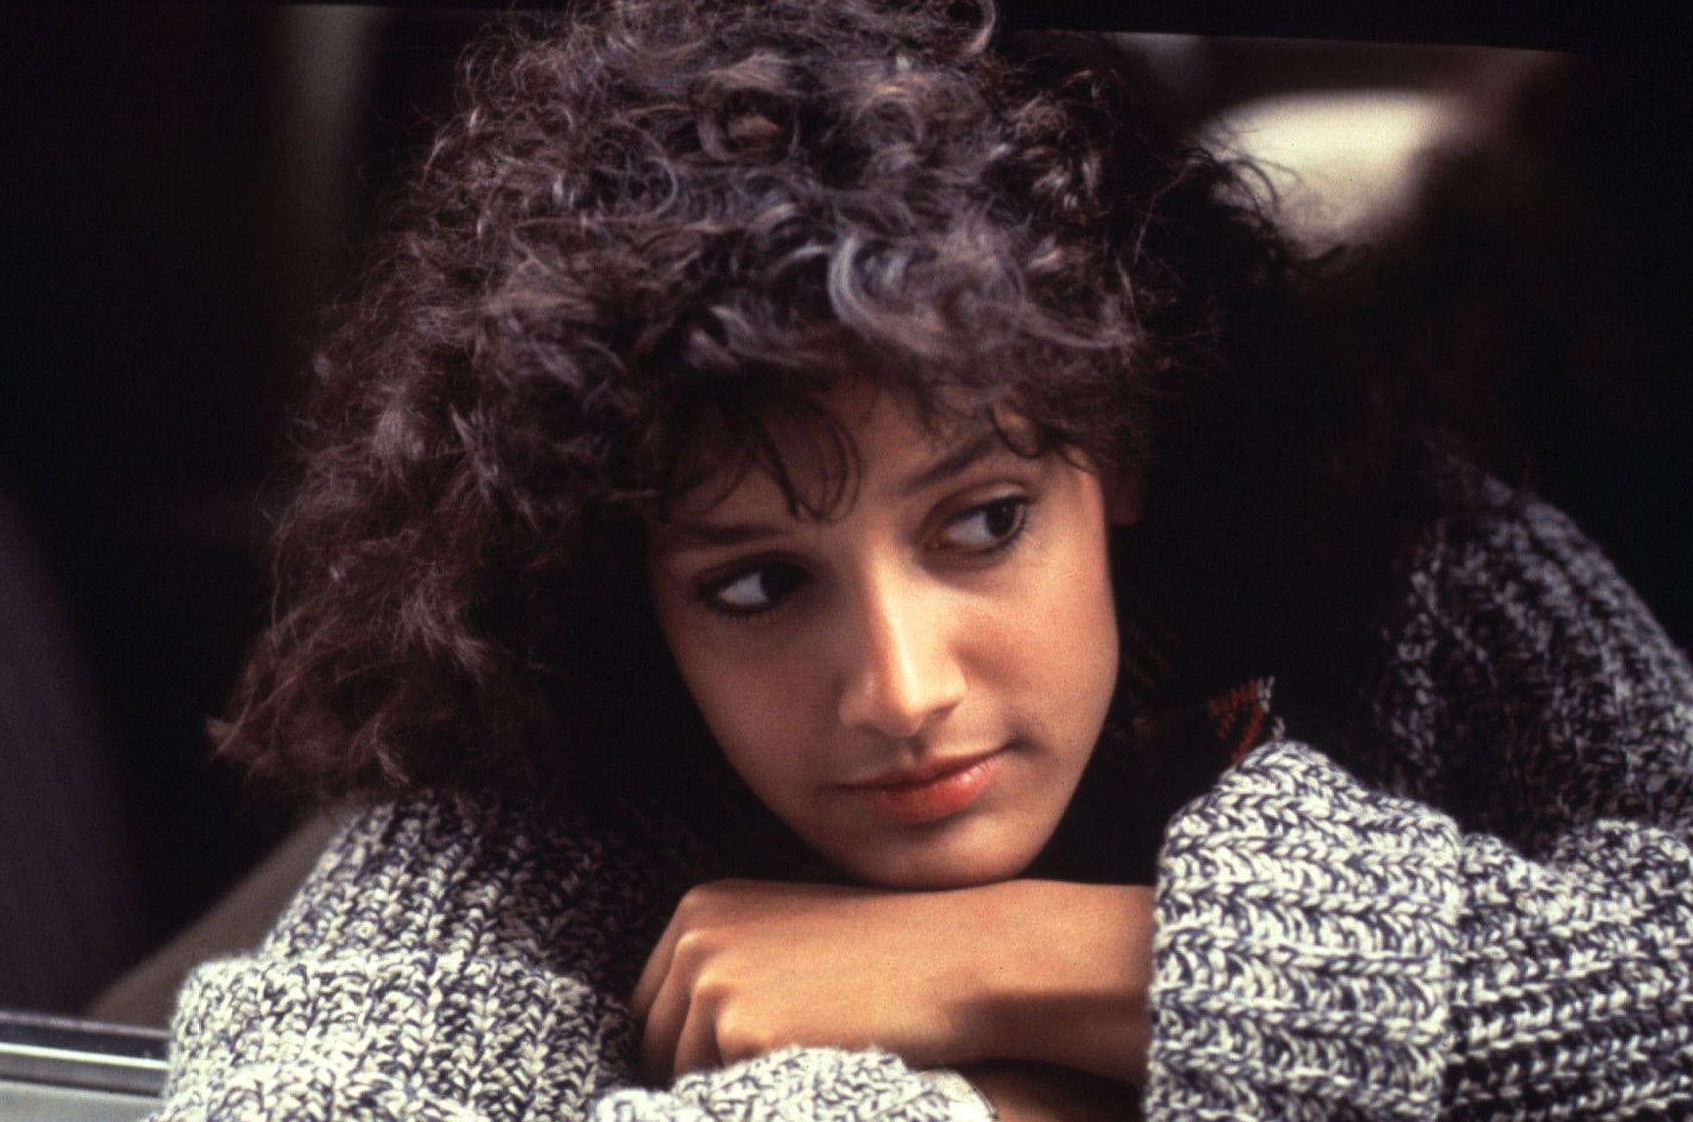 La comédie musicale de 1983 «Flashdance» doit sa popularité à la lumineuse et touchante Jennifer Beals, inconnue jusqu’alors, la jeune actrice danse à merveille. DR